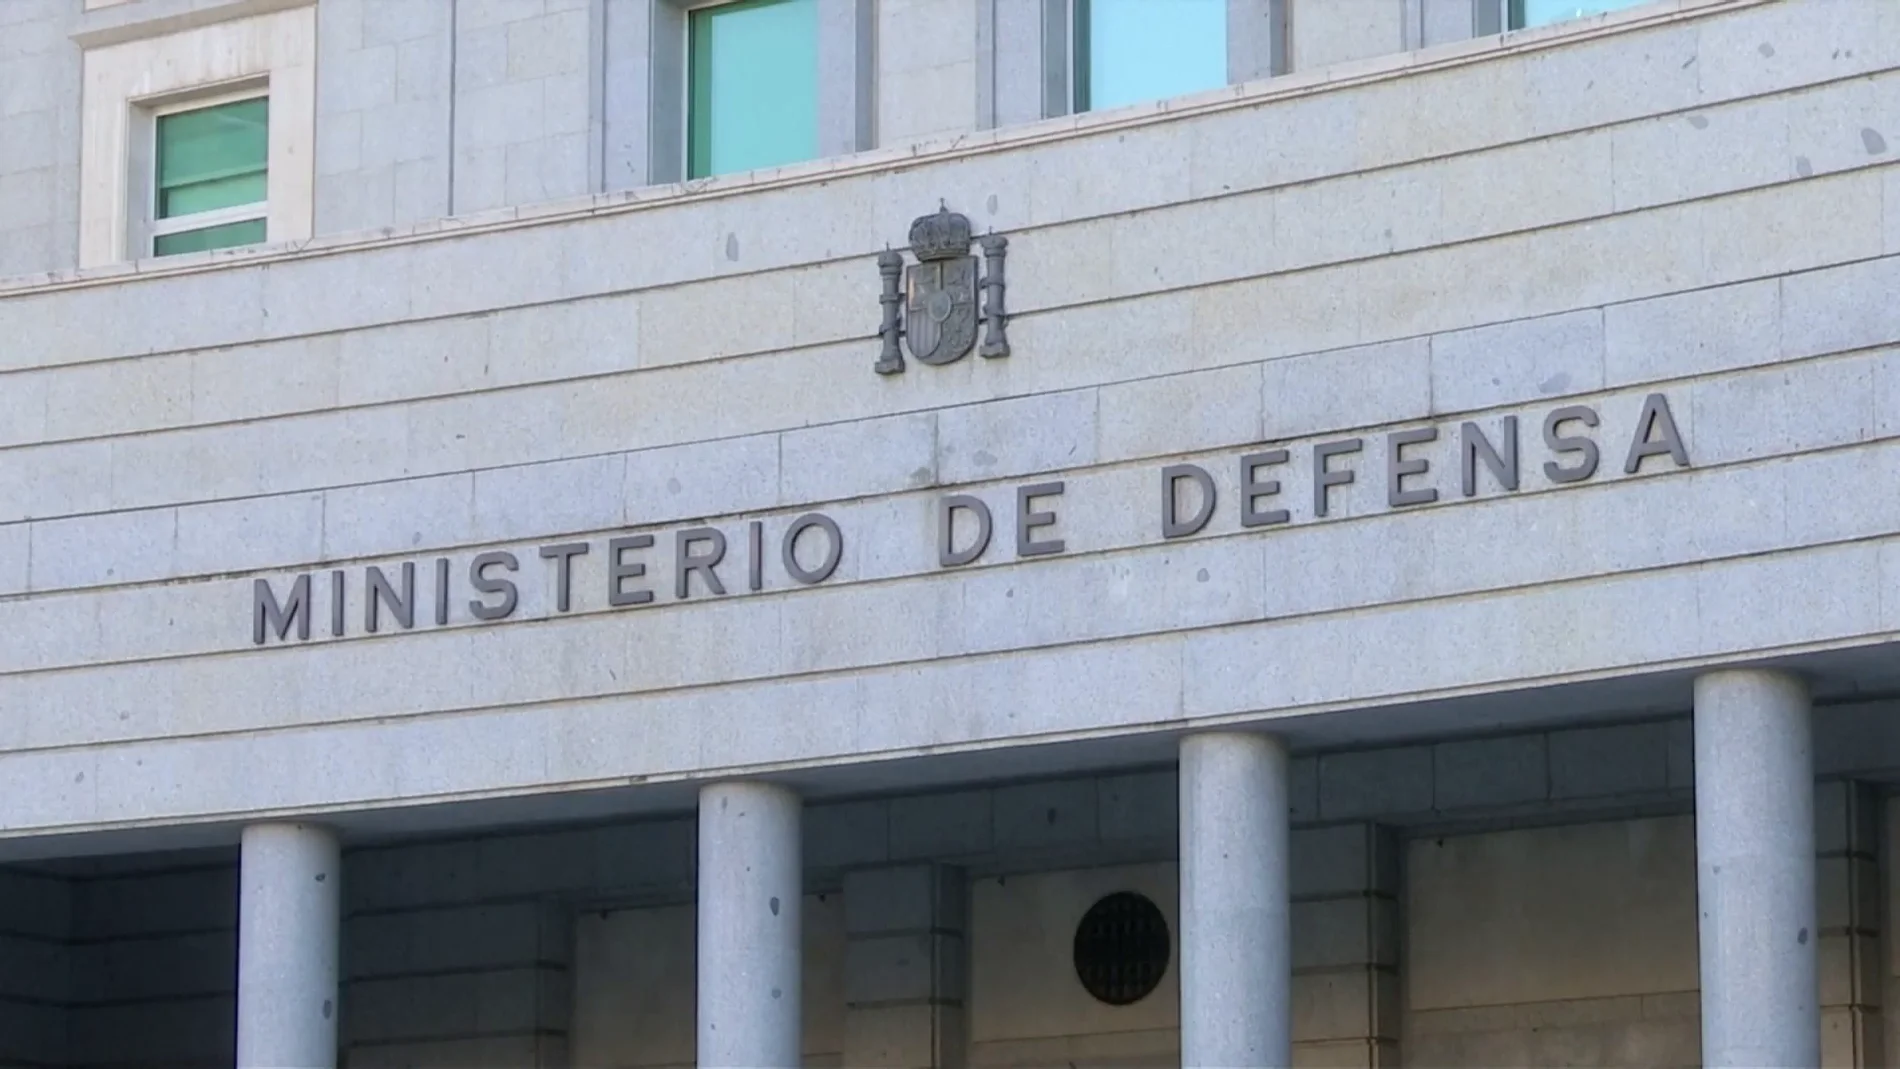 Ministerio de defensa.